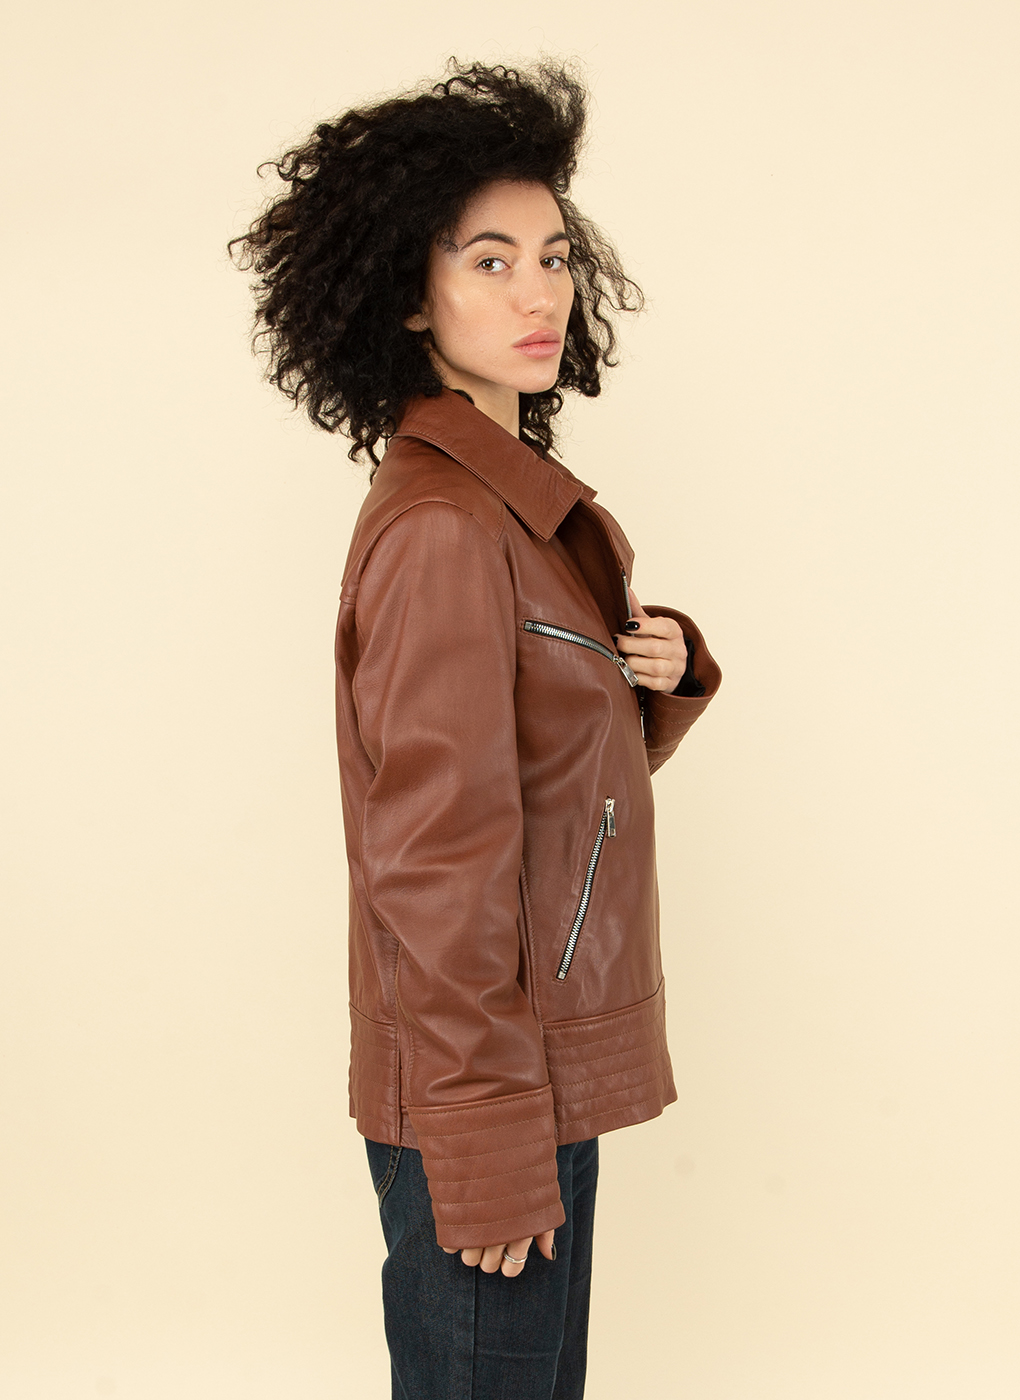 Кожаная куртка женская Каляев 53744 коричневая 54 RU